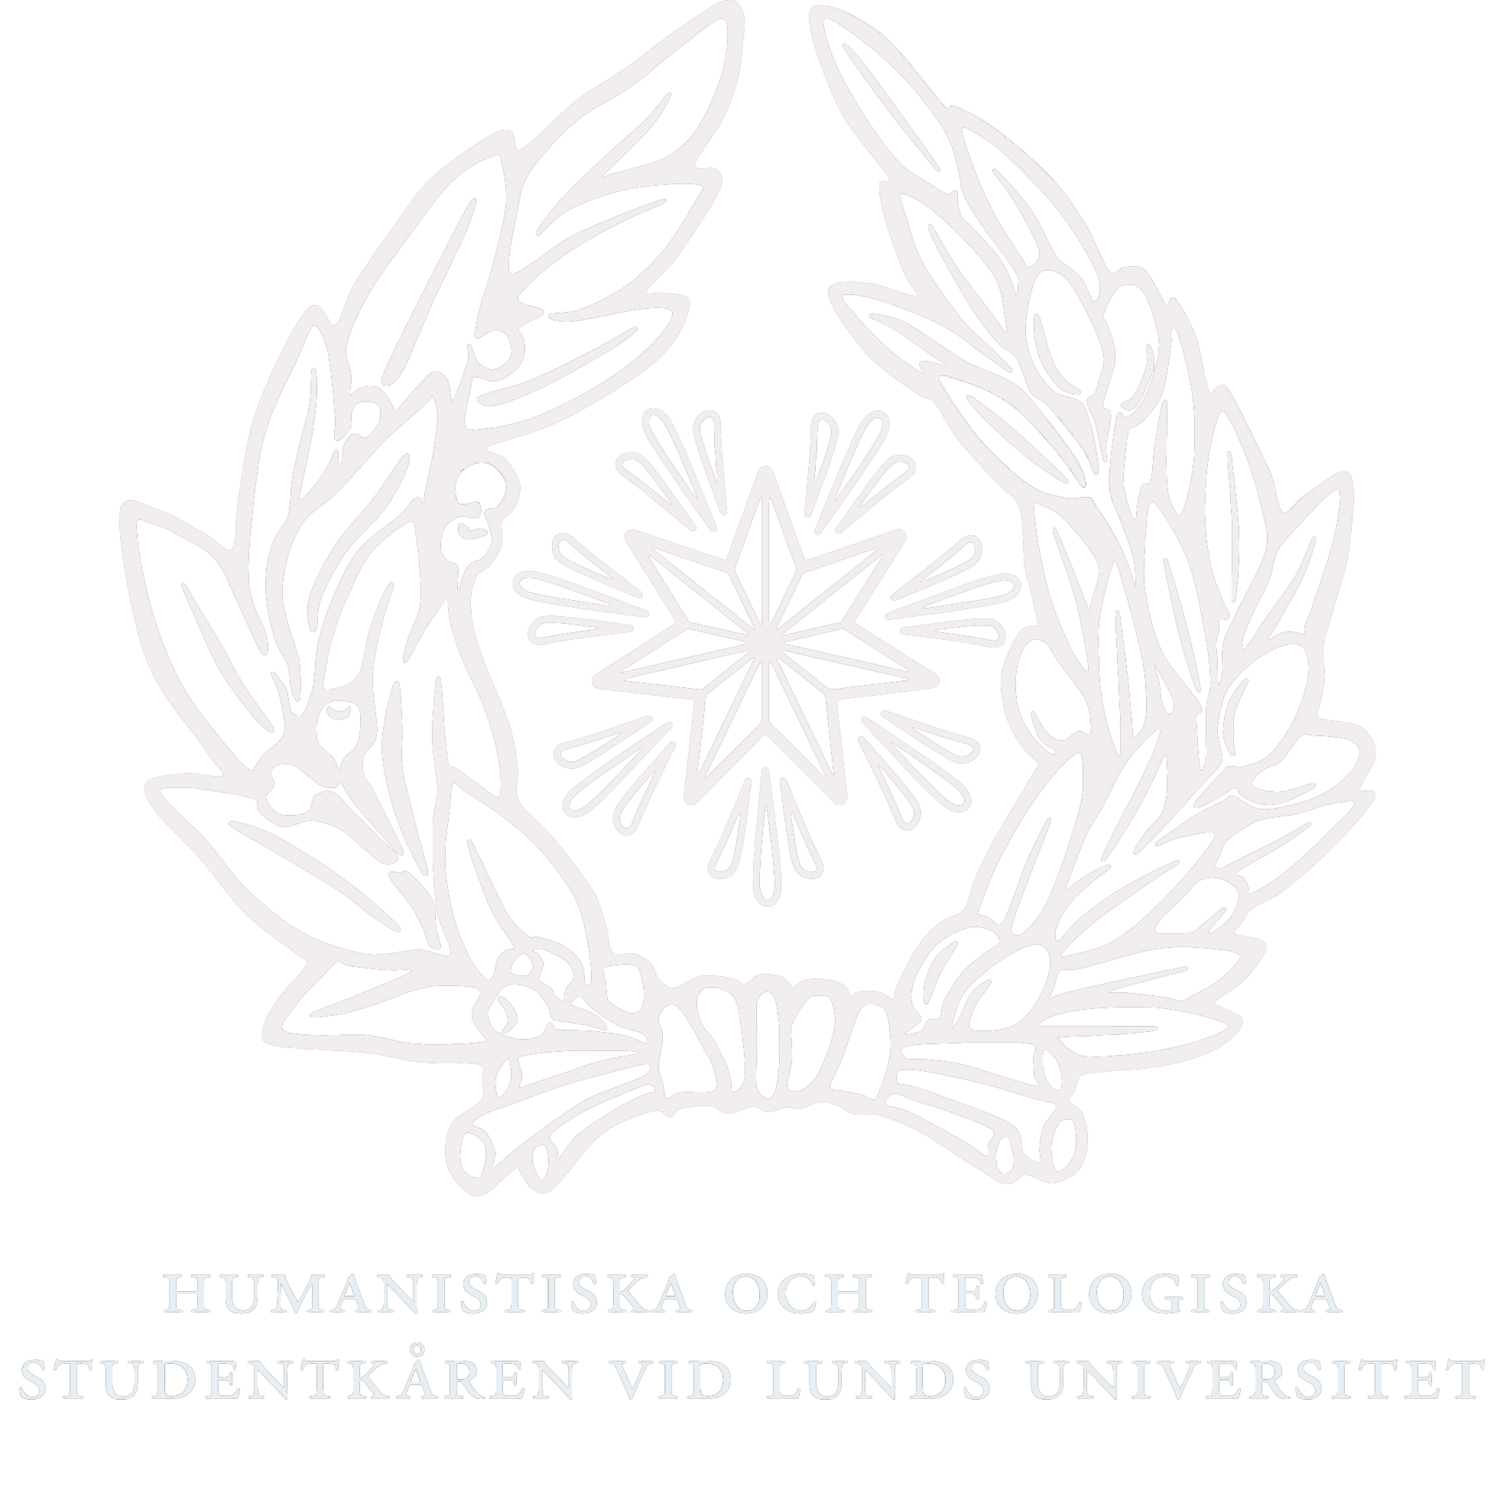 Humanistiska och teologiska studentkåren vid Lunds universitet